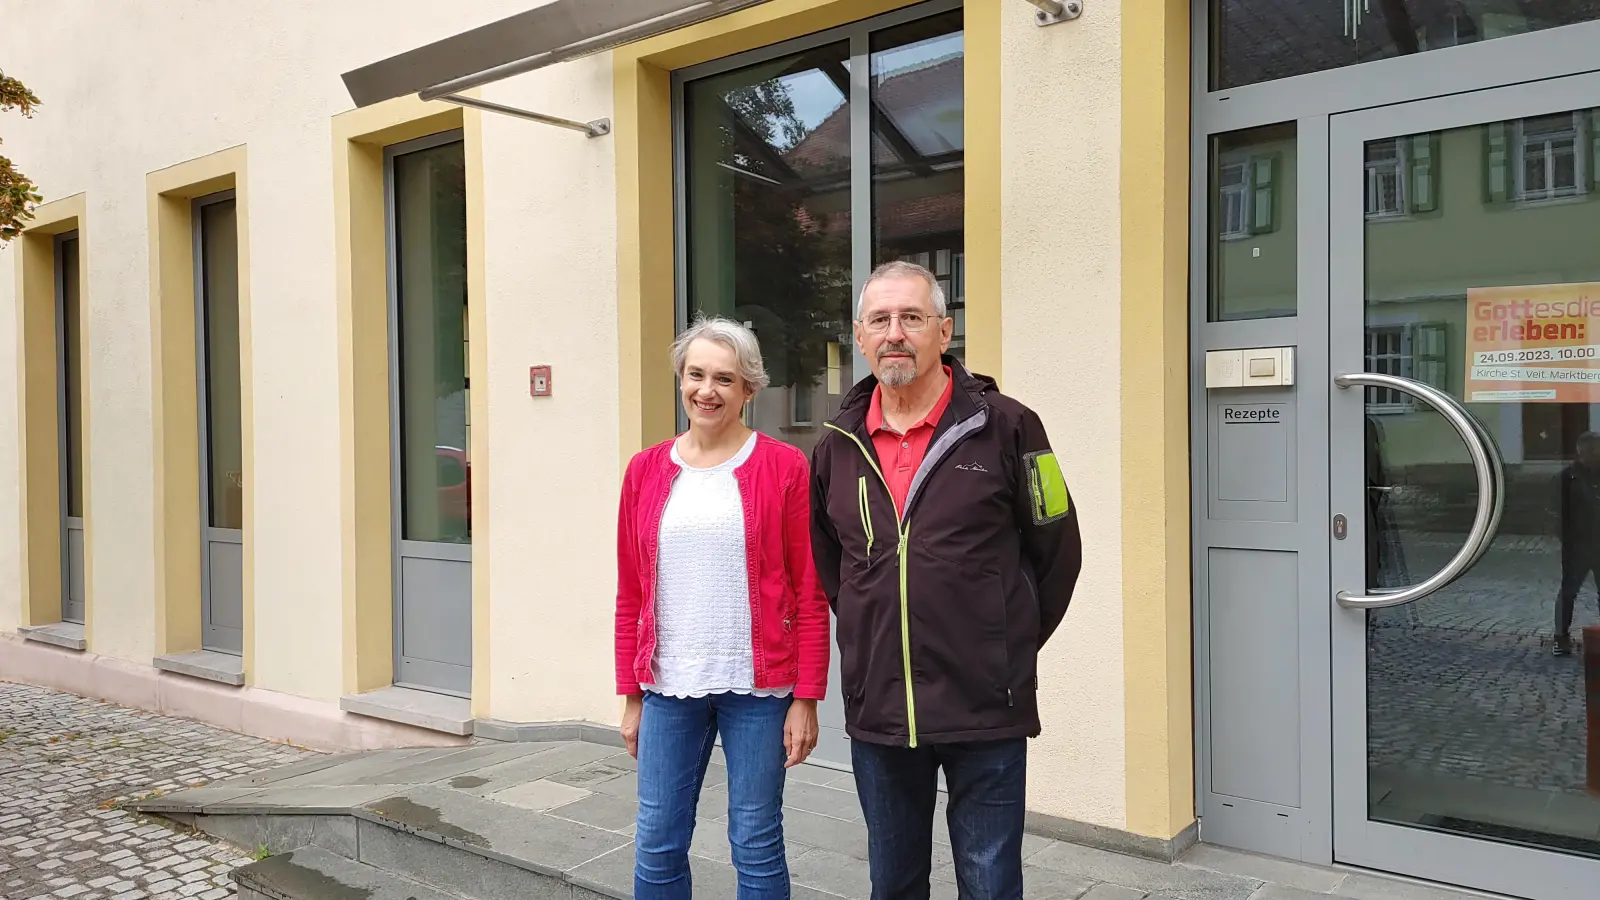 Dr. Marianne Scharf und Dr. Manfred Kern freuen sich auf den Umbau der ehemaligen Brunnen-Apotheke zur Allgemeinarztpraxis. (Foto: Katrin Merklein)